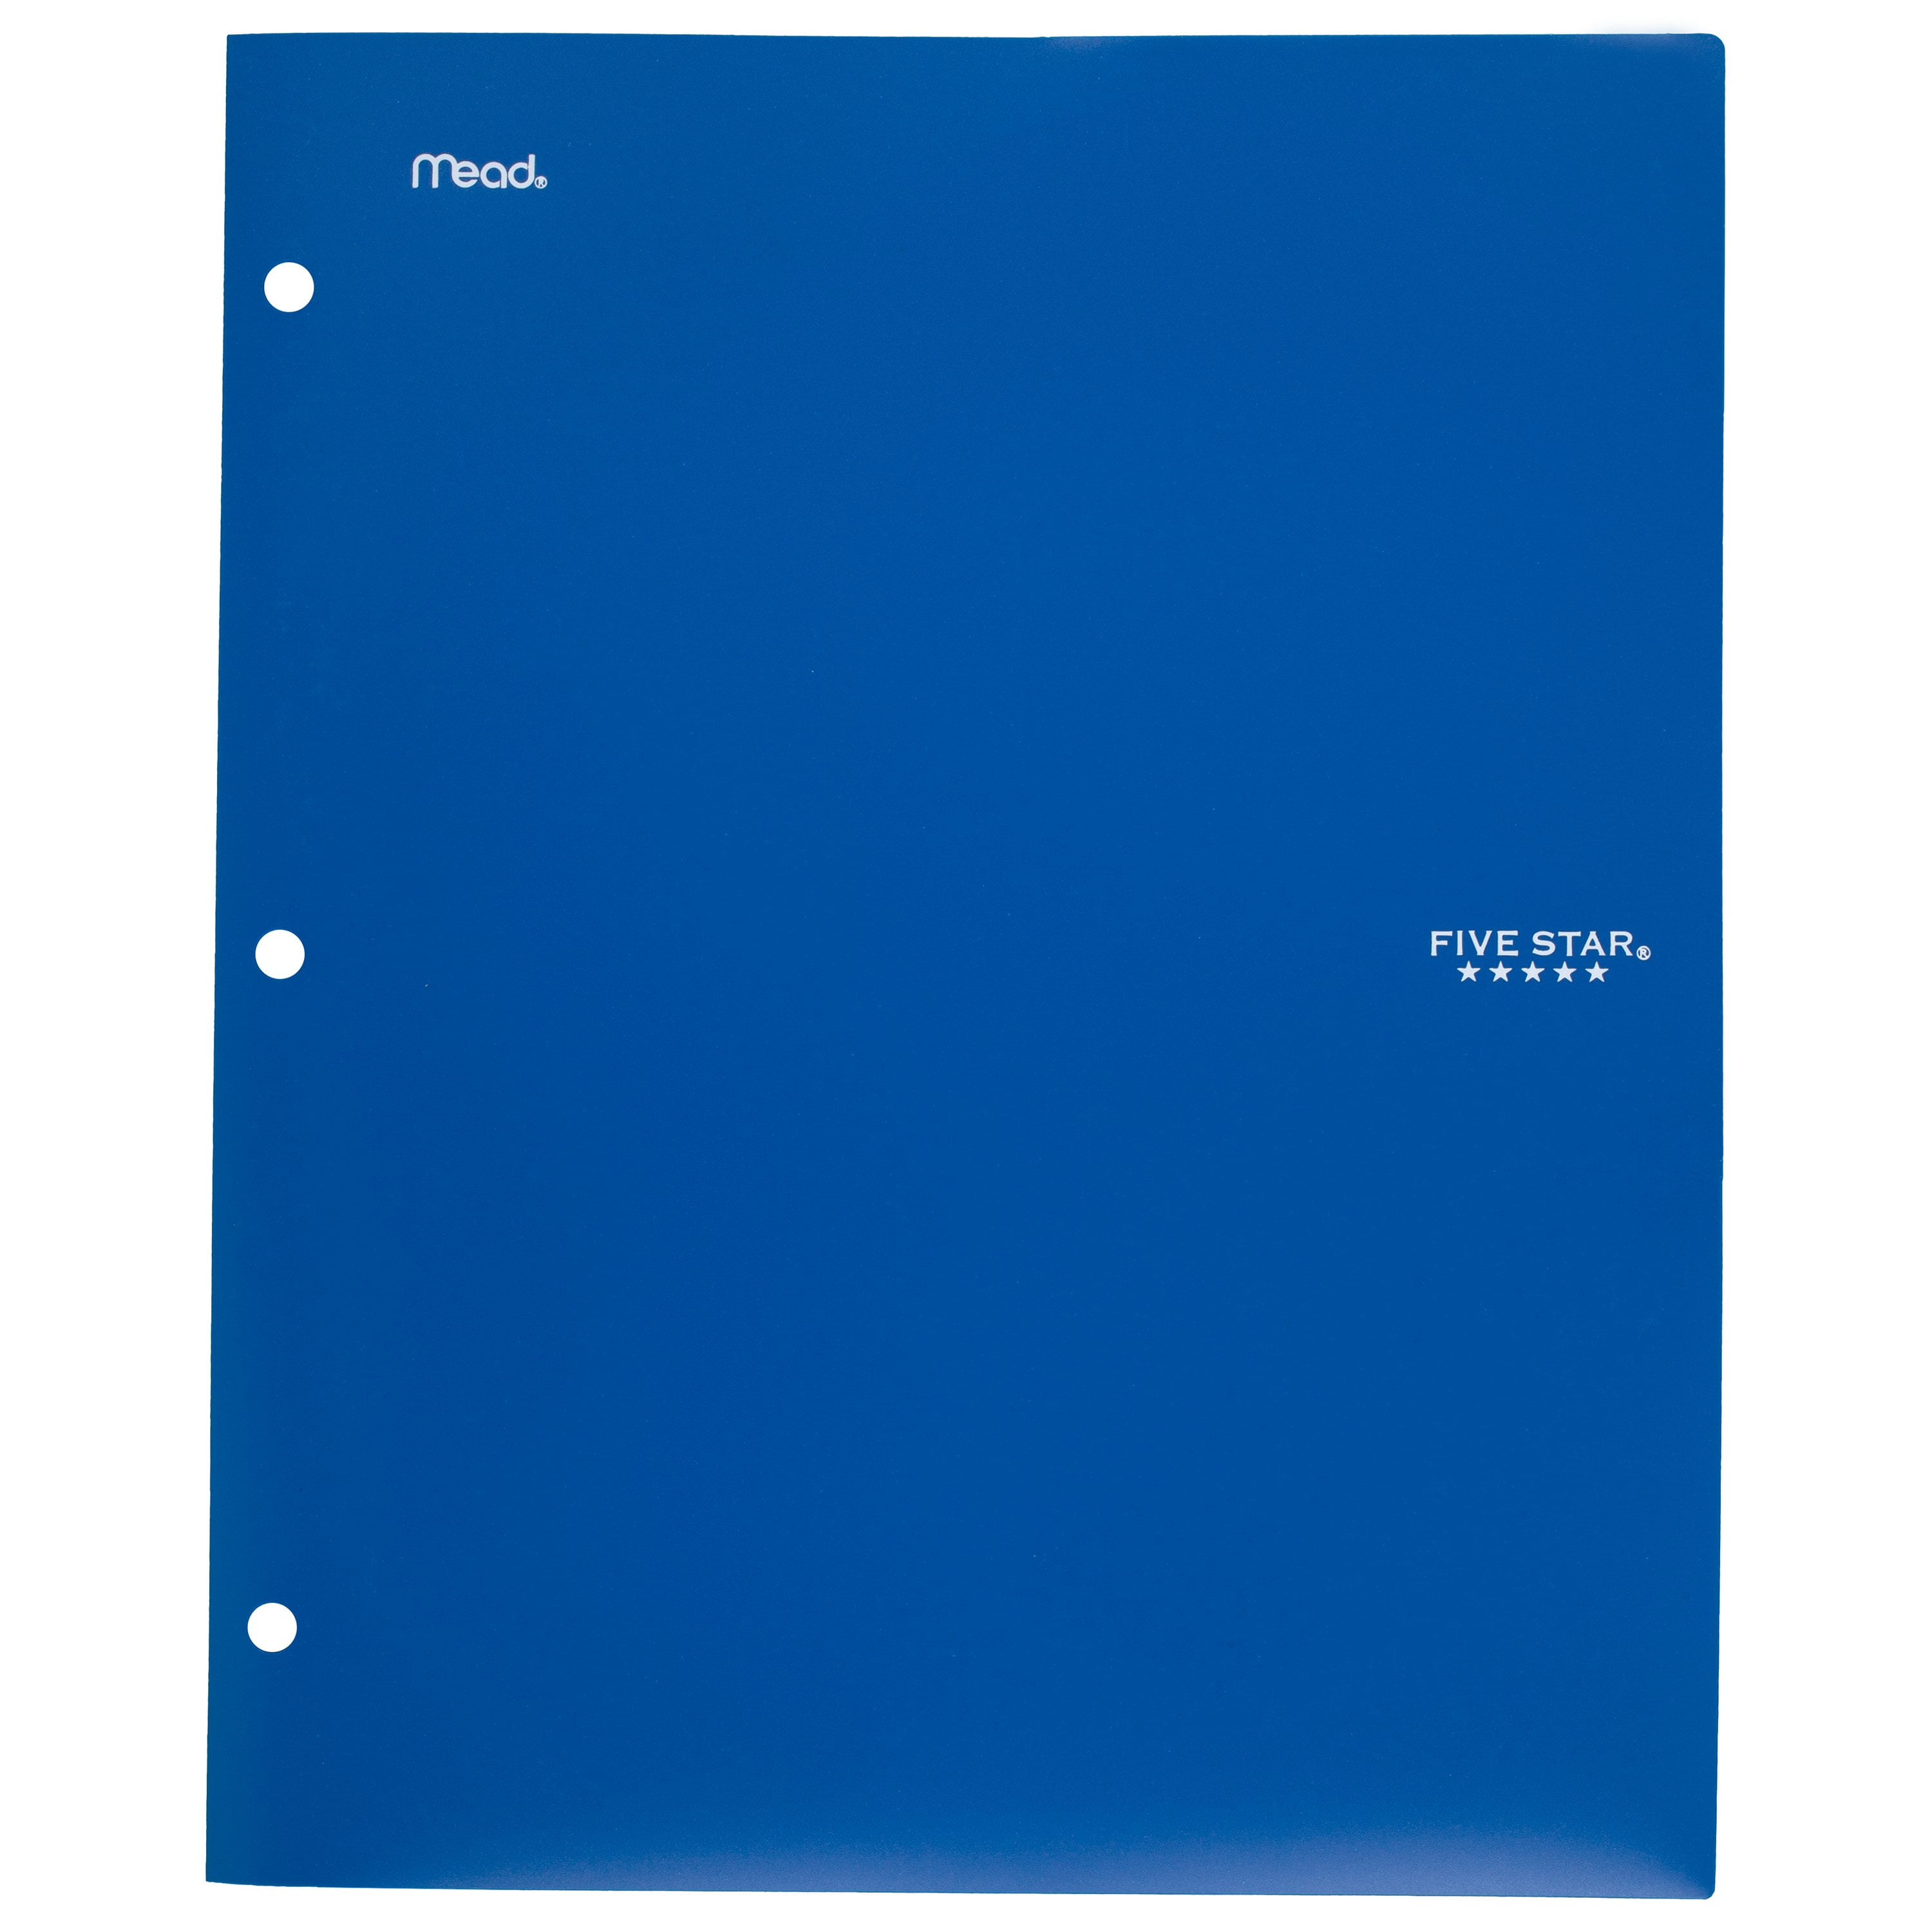 Five Star 2-Pocket Stay-Put Plastic Folder, Cobalt Blue (37447)